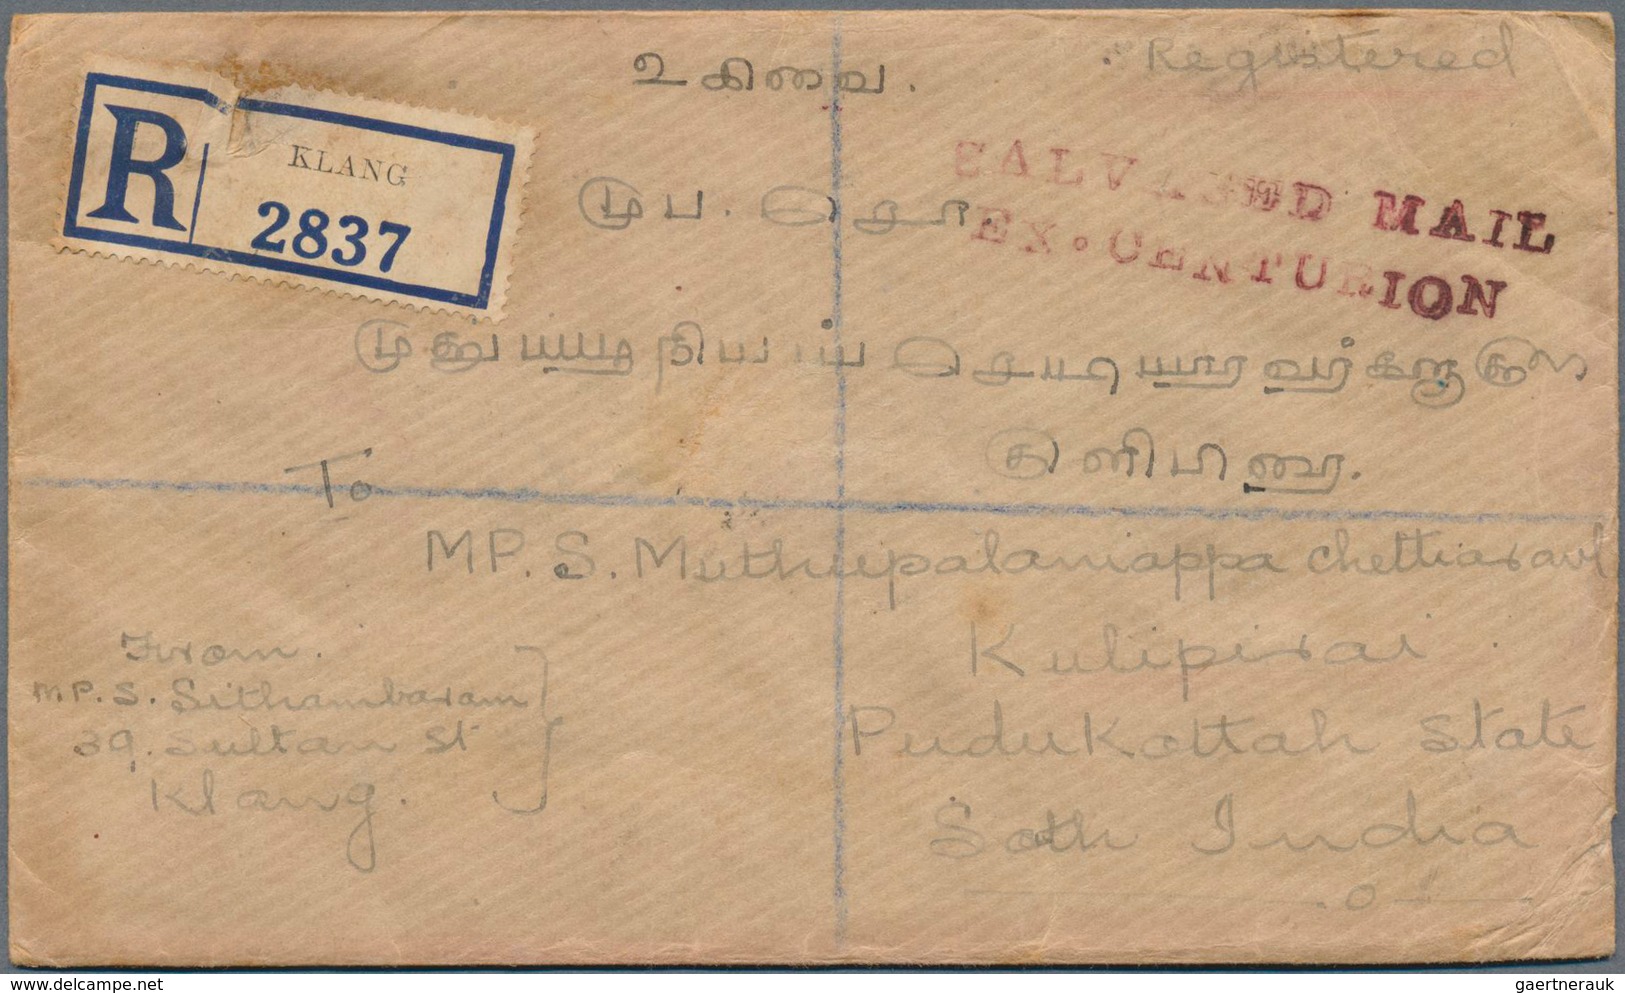 Malaiische Staaten - Selangor: 1939, Crash Mail CENTURION, Registered Cover From Klang, 10.JUN 39, A - Selangor